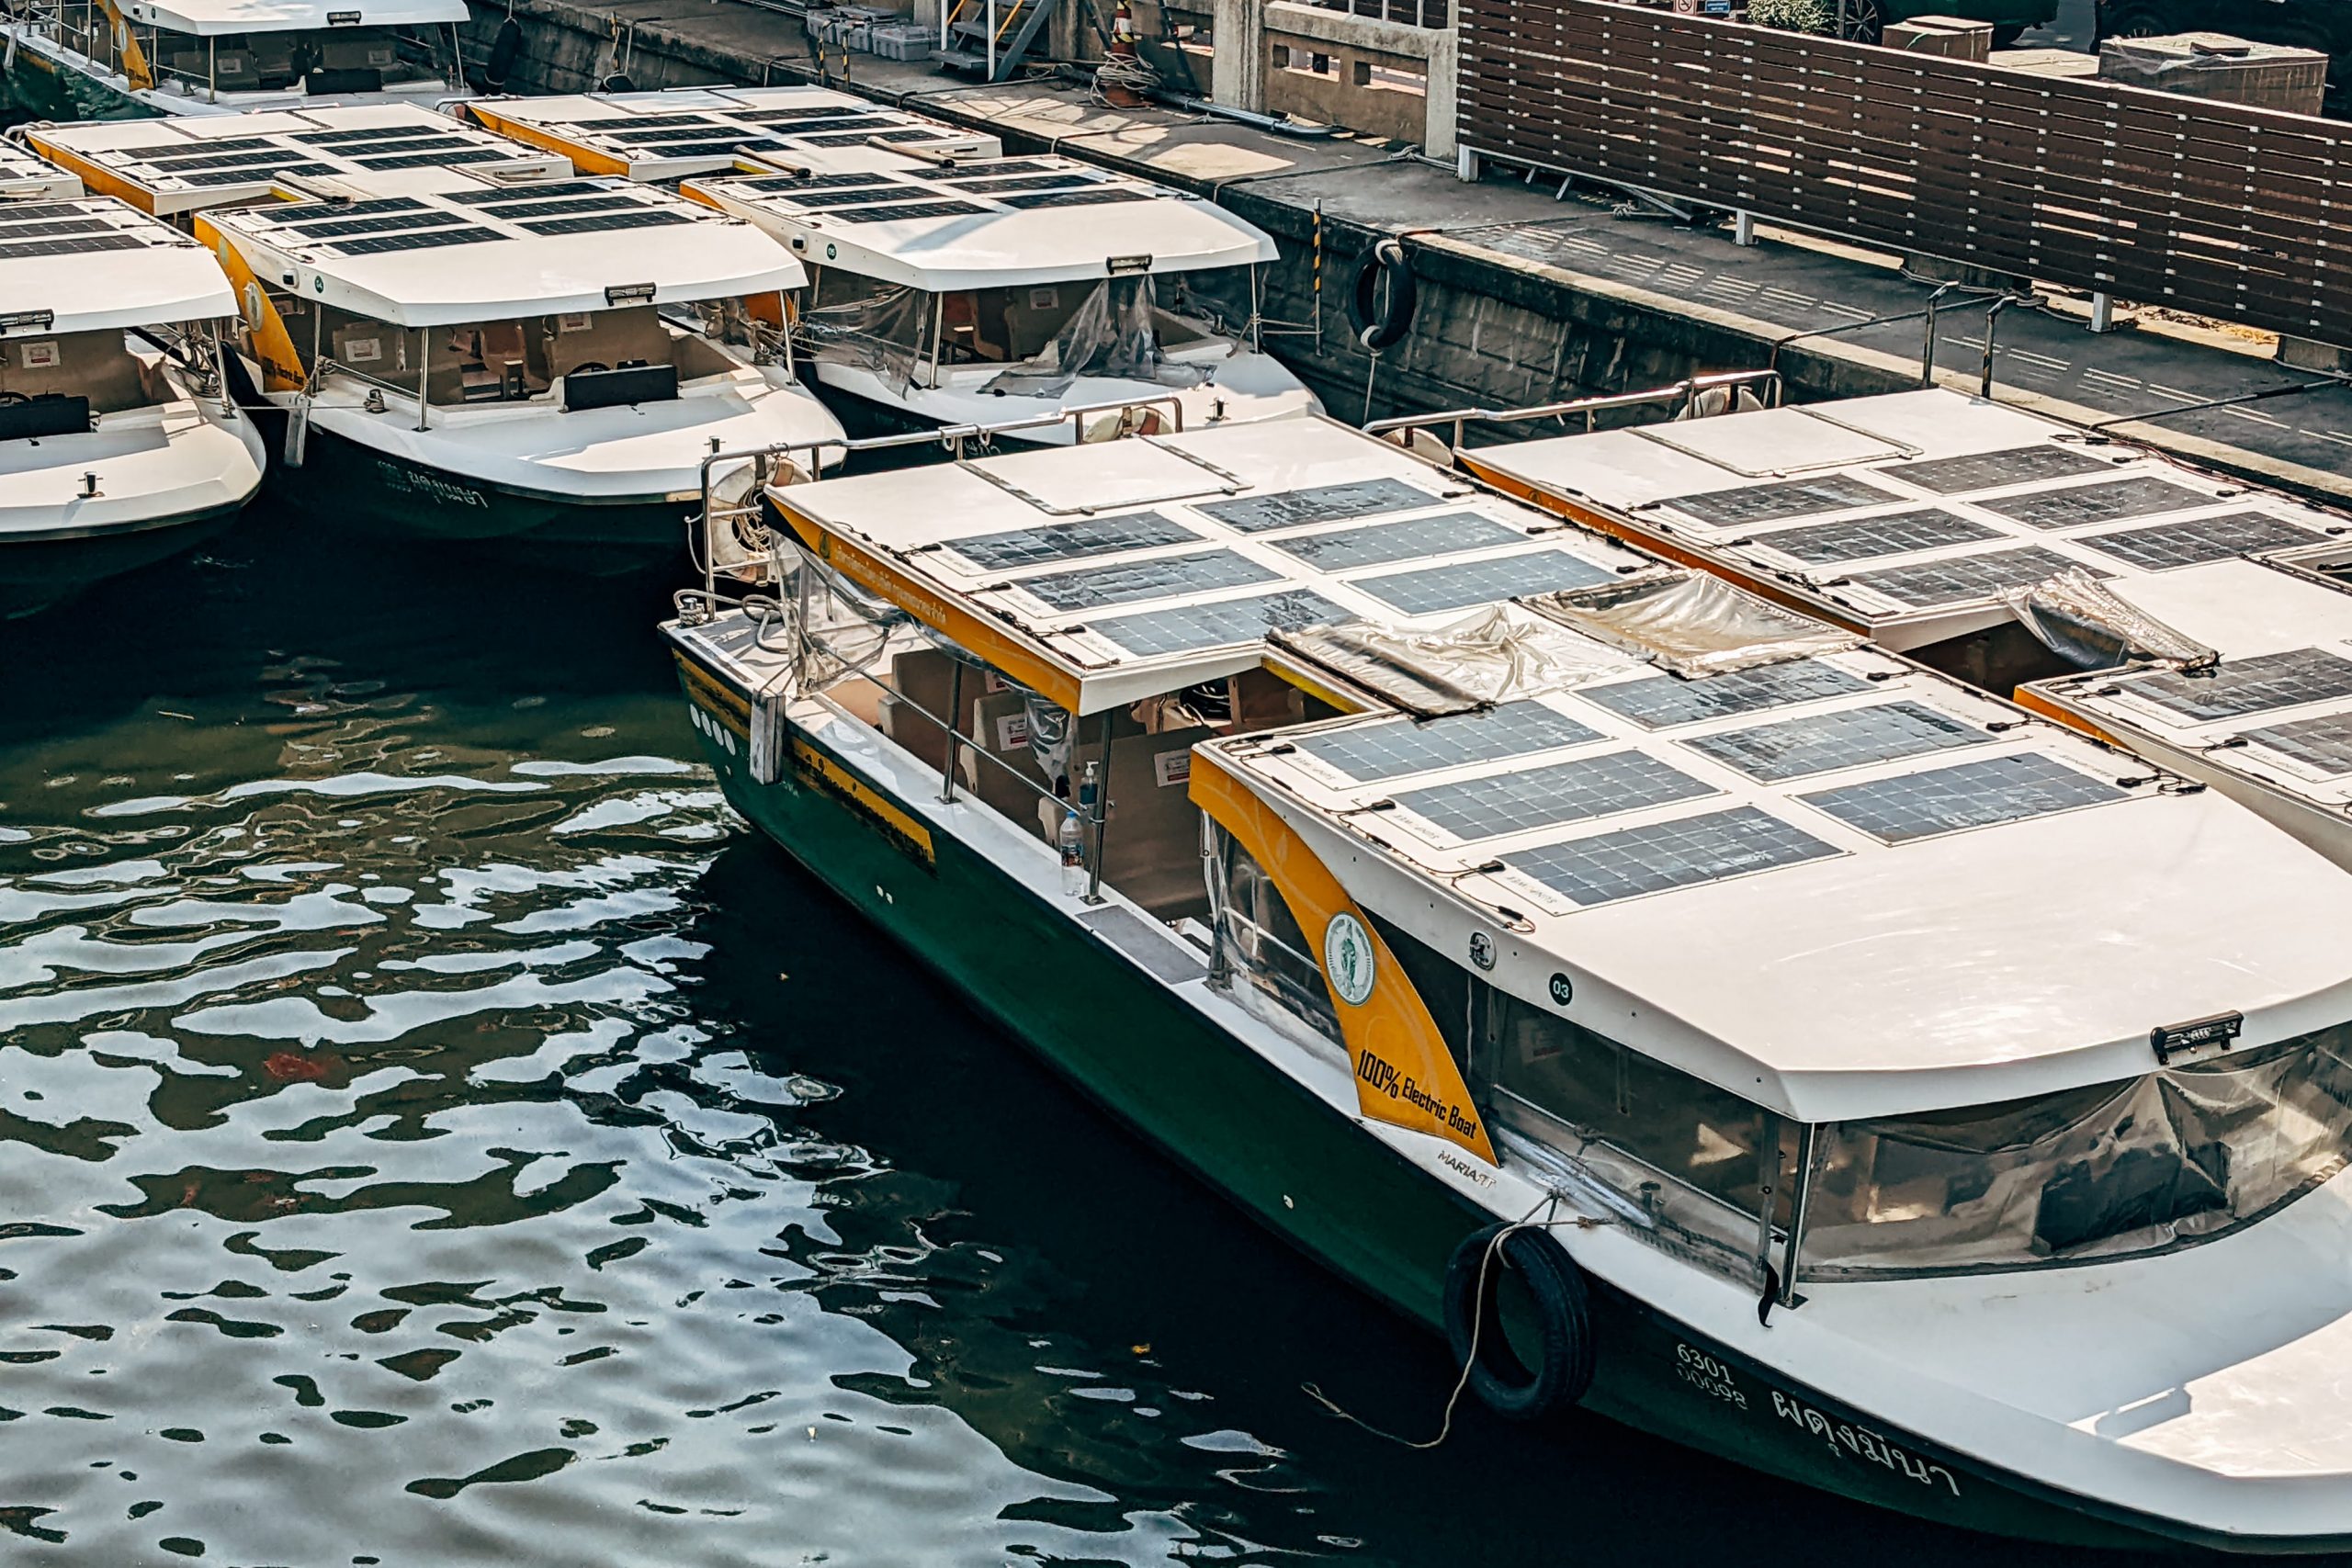 Solar Panels On Boats In A Marina